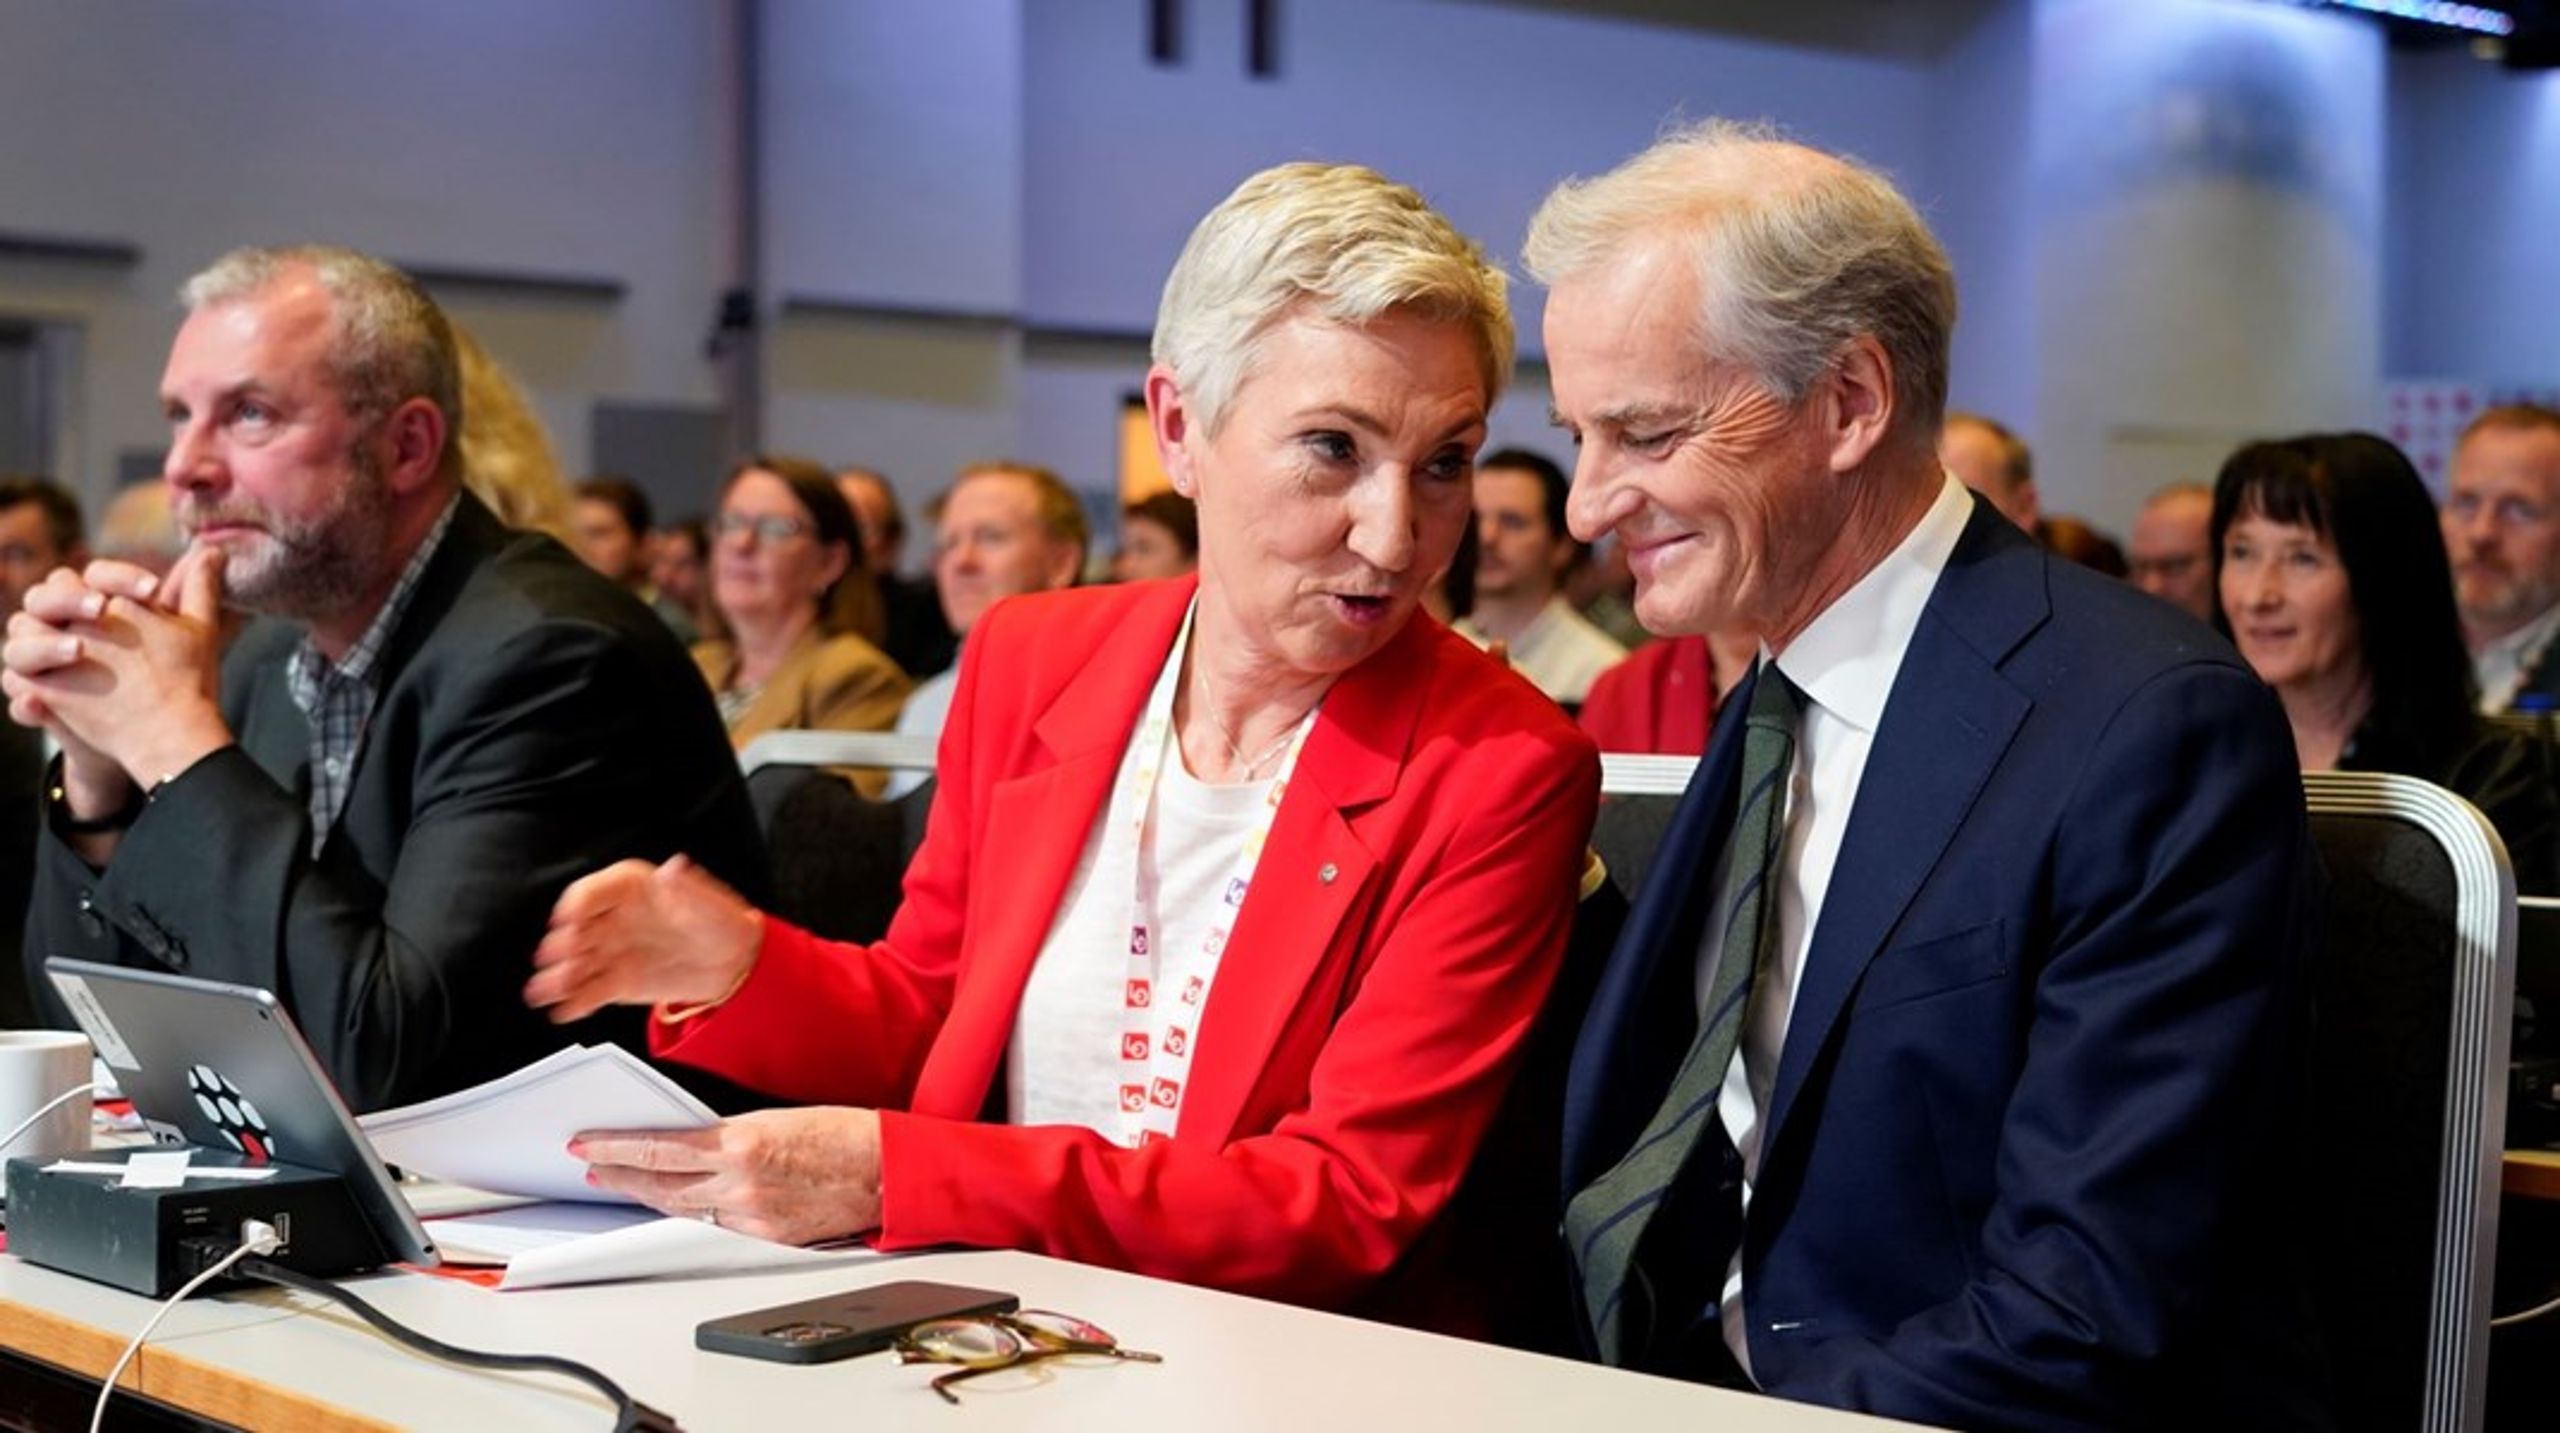 Forholdet mellom LO og Arbeiderpartiet, her representert ved LO-leder Peggy Hessen Følsvik og statsminister Jonas Gahr Støre, er tett. Det kan være et demokratisk problem, mener lederne i Unio og YS.